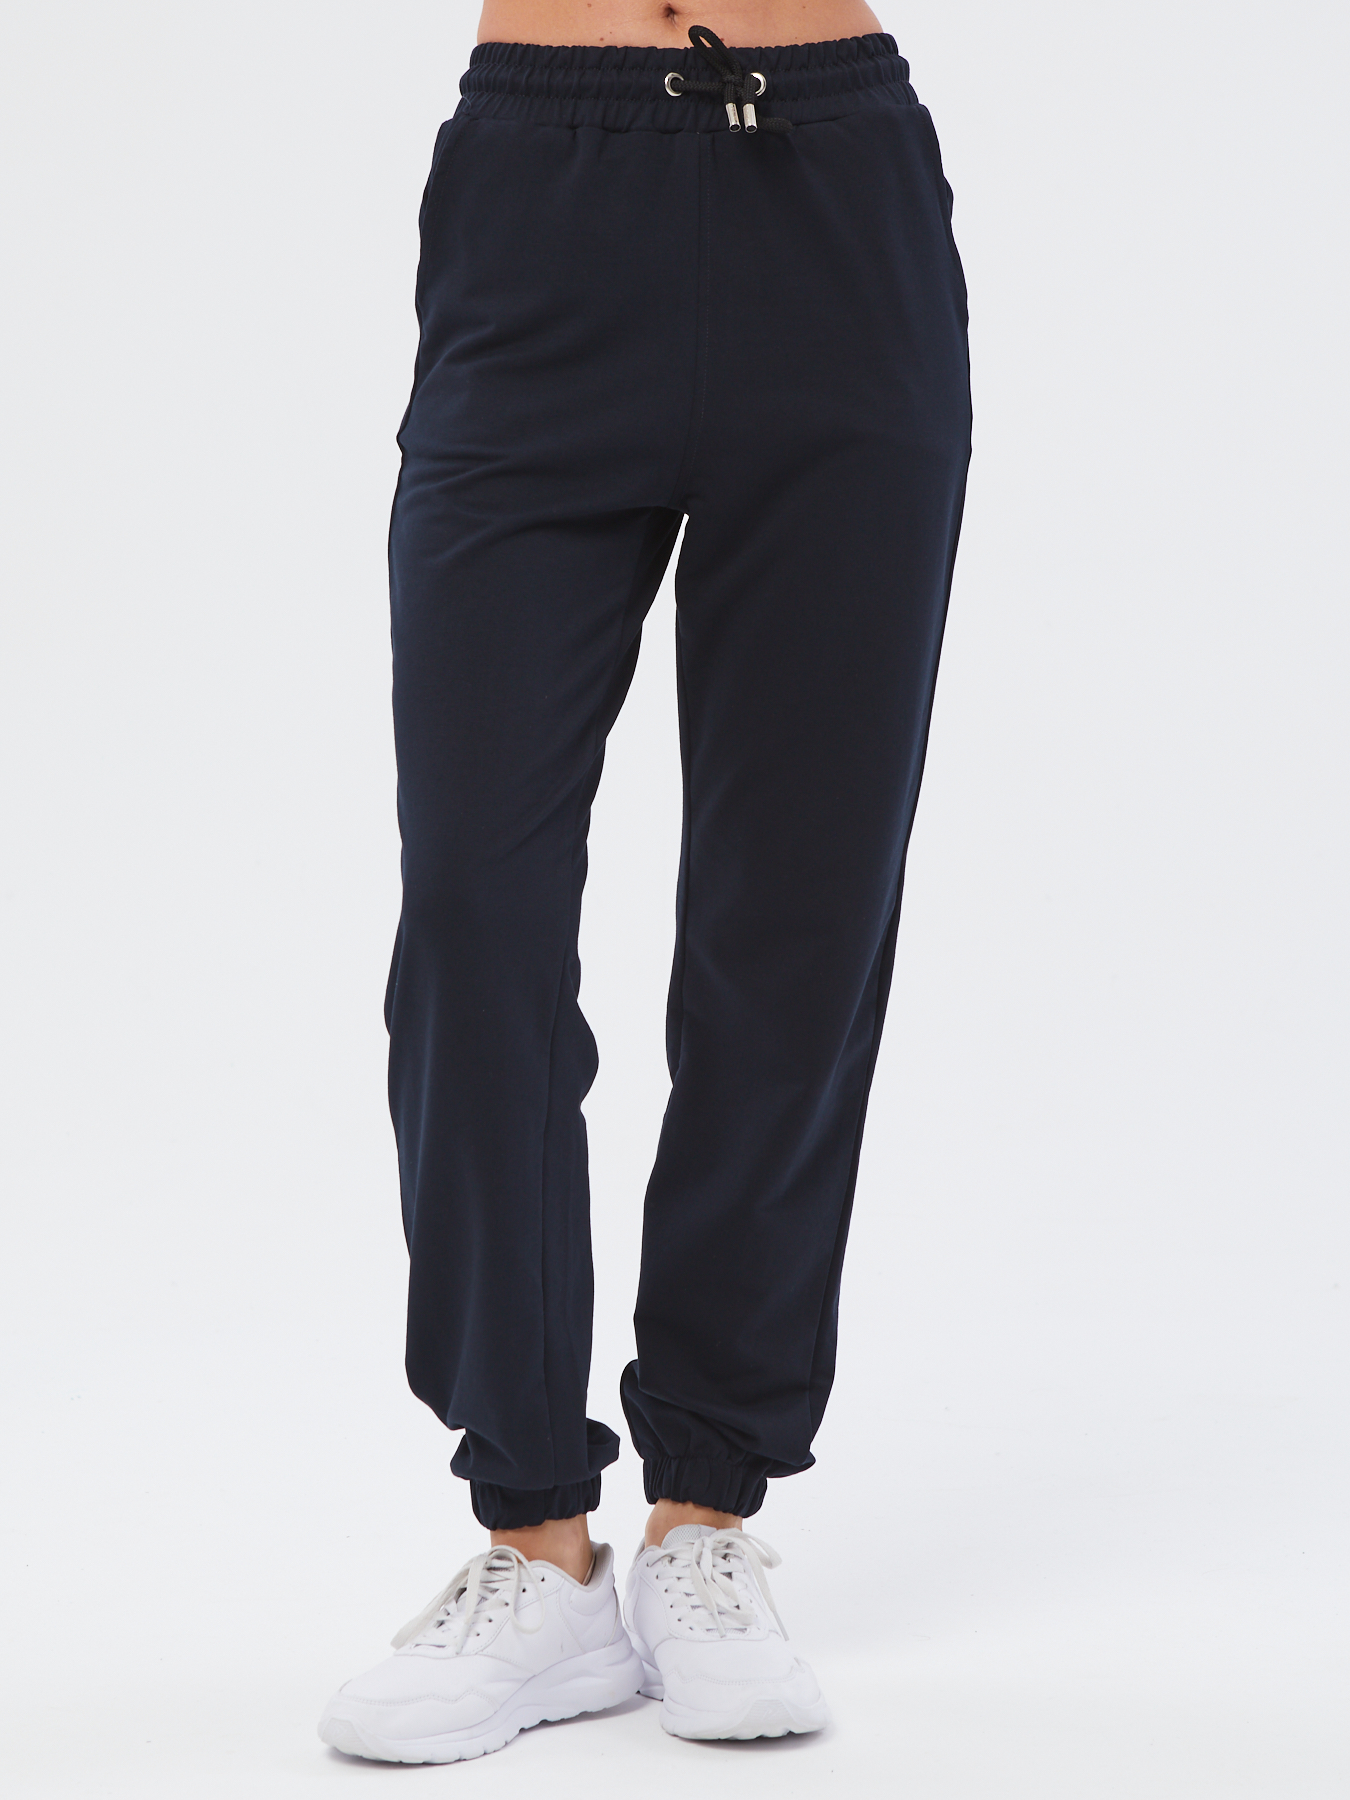 Спортивные брюки женские Still-expert б5 синие 46/165-180